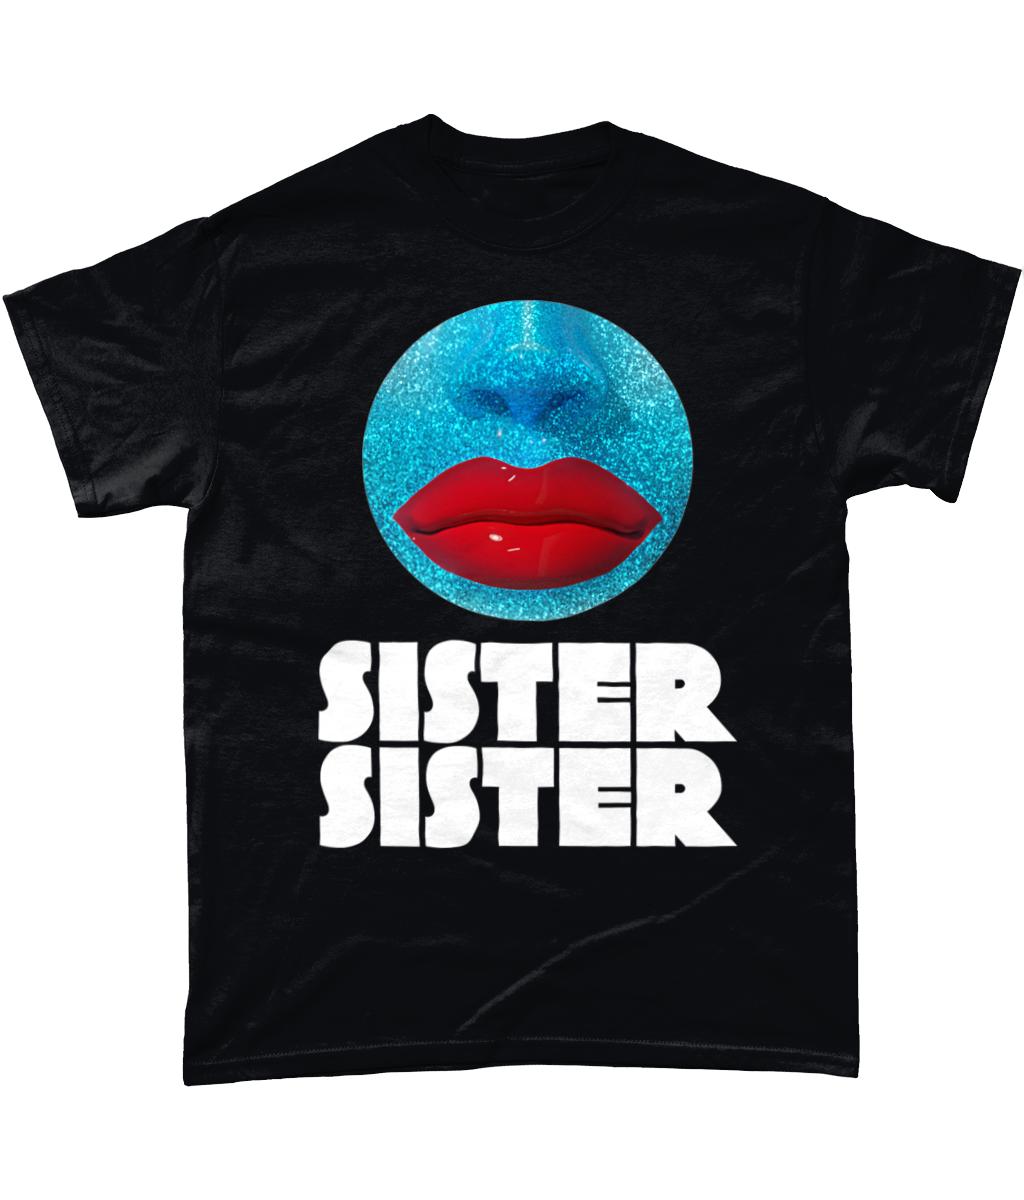 Sister Sister - Orb T-Shirt